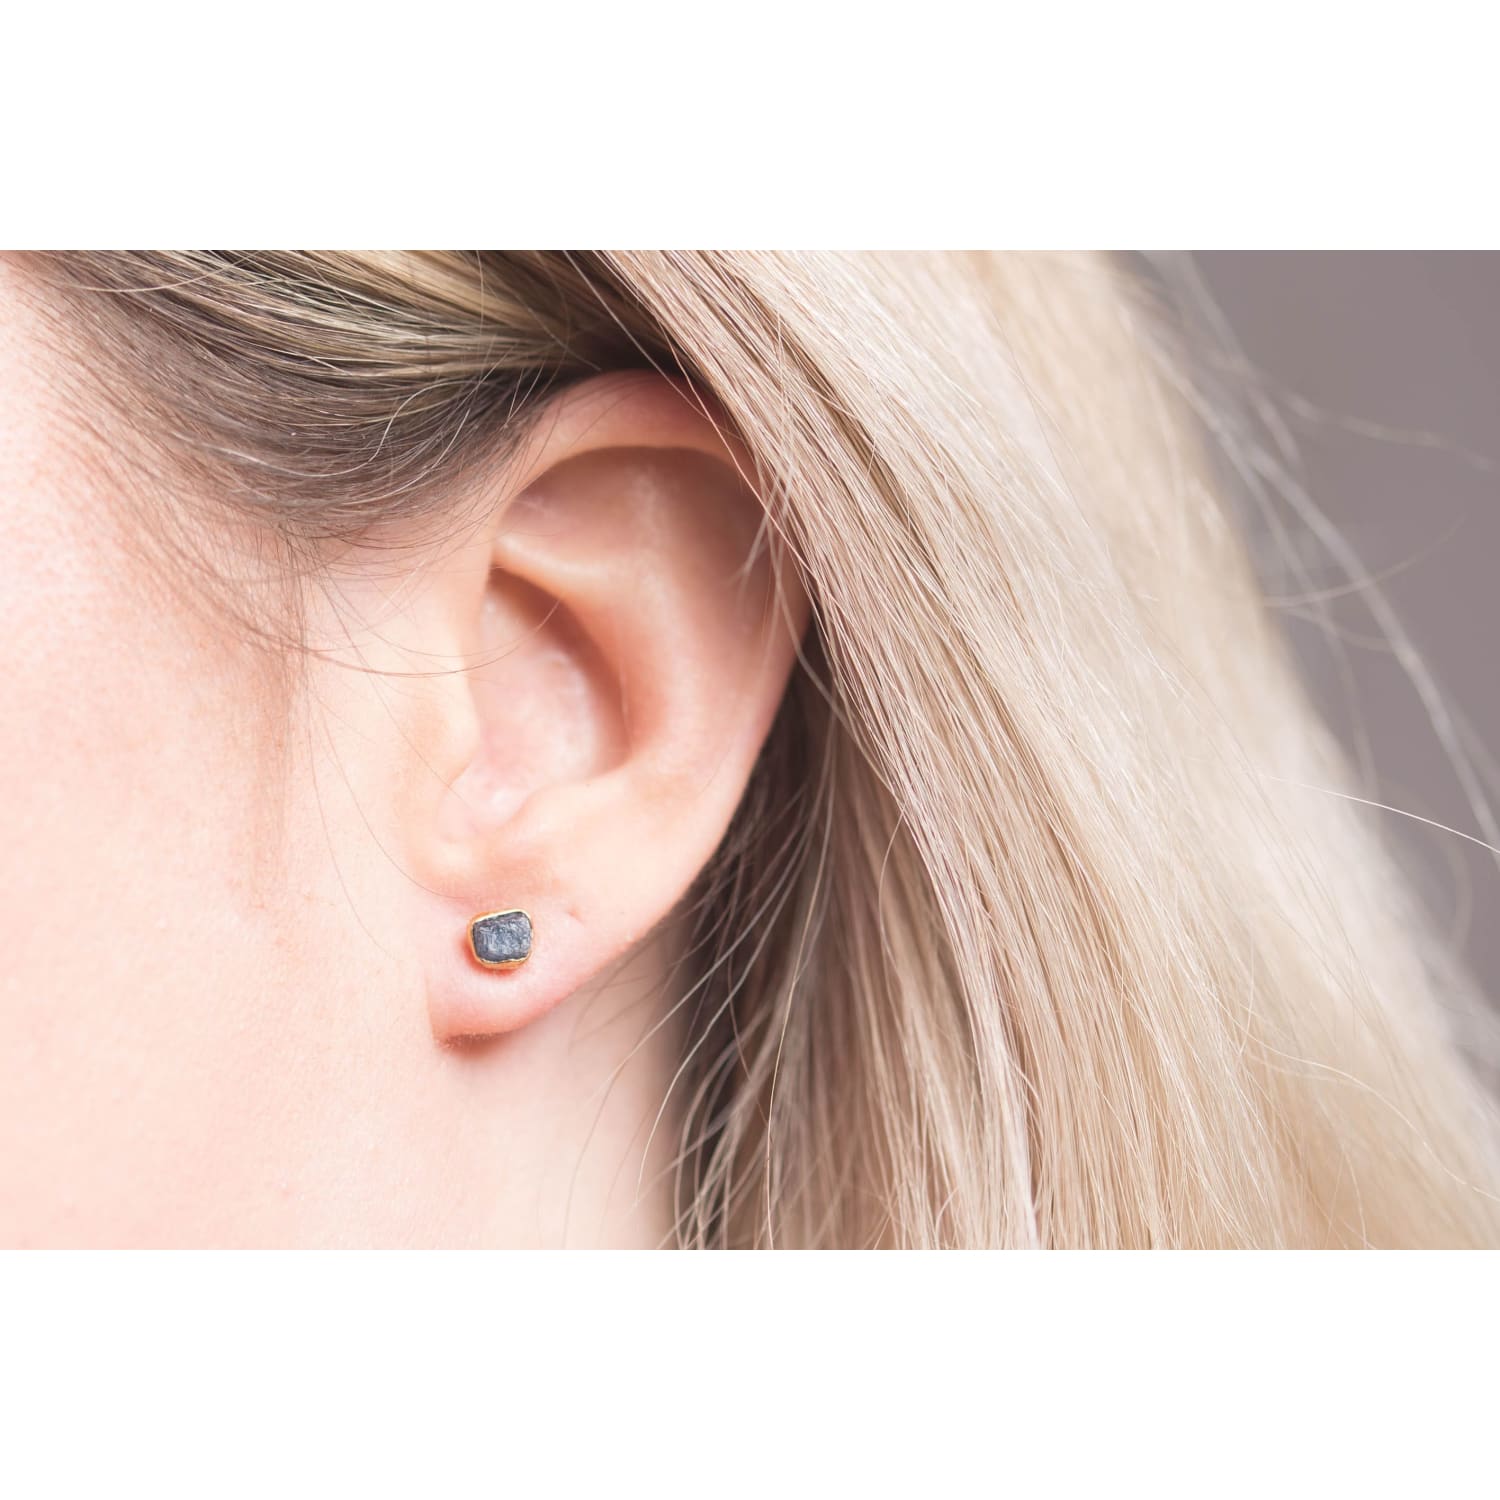 Dainty Raw Sapphire Earrings in Silver Gemstone Jewelry